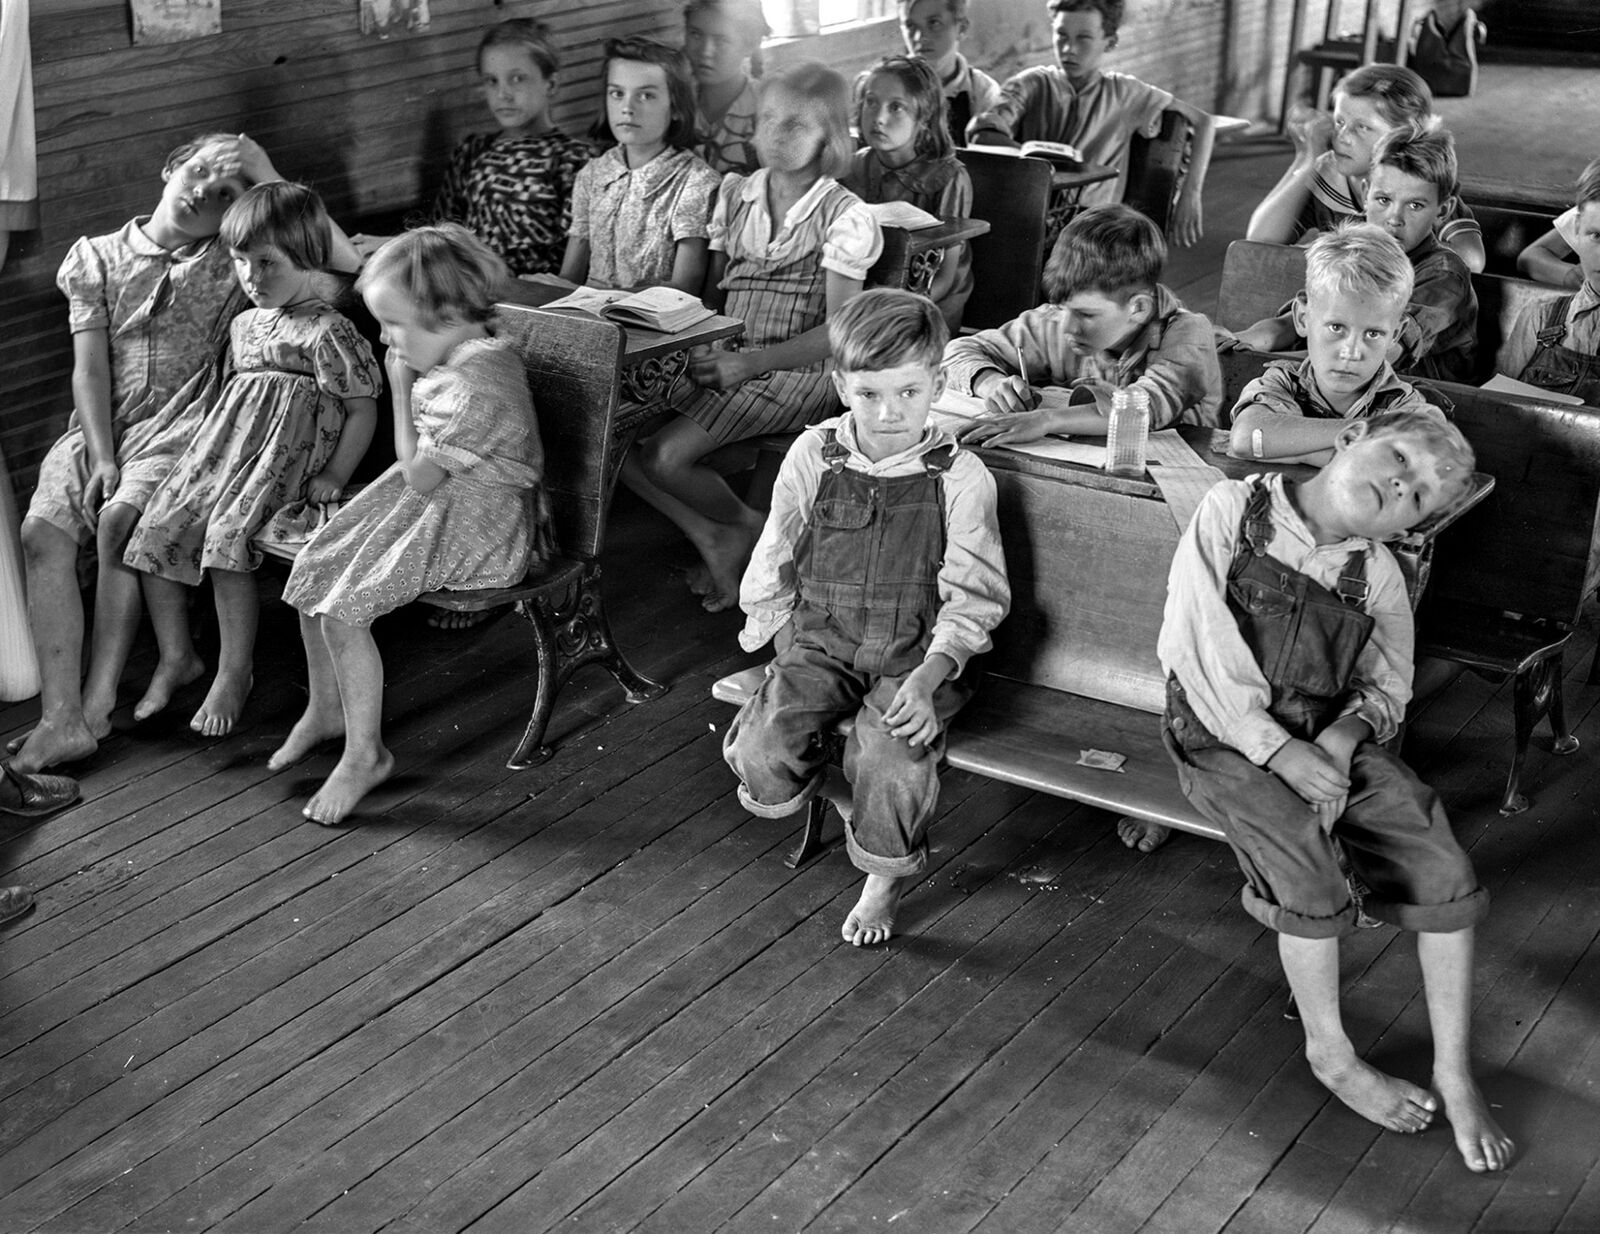 1940 DEPRESSION ERA SCHOOL ROOM Photo  (185-C)